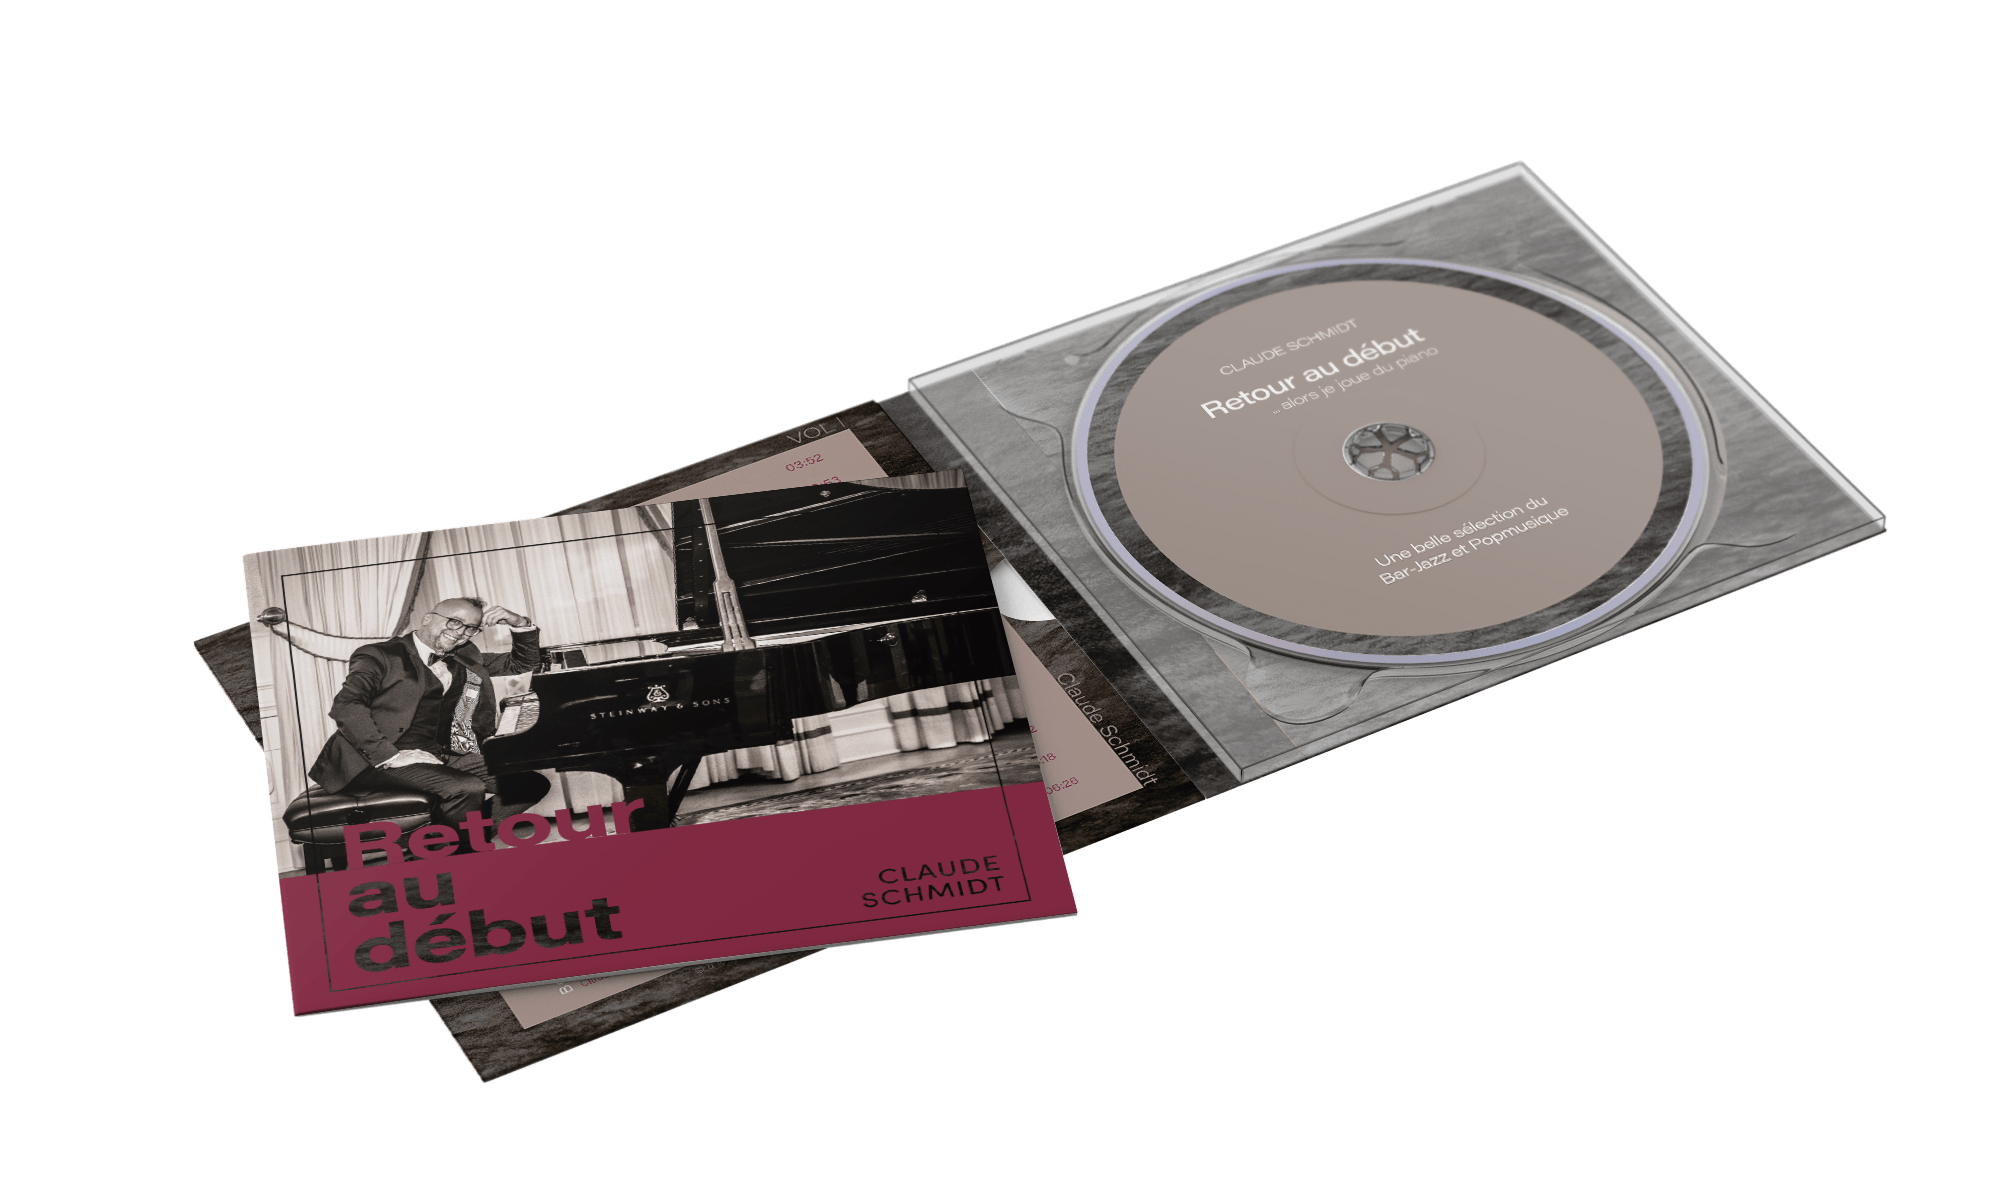 Billede af CD-replikation (presning) med labelprint, emballage og tryksager